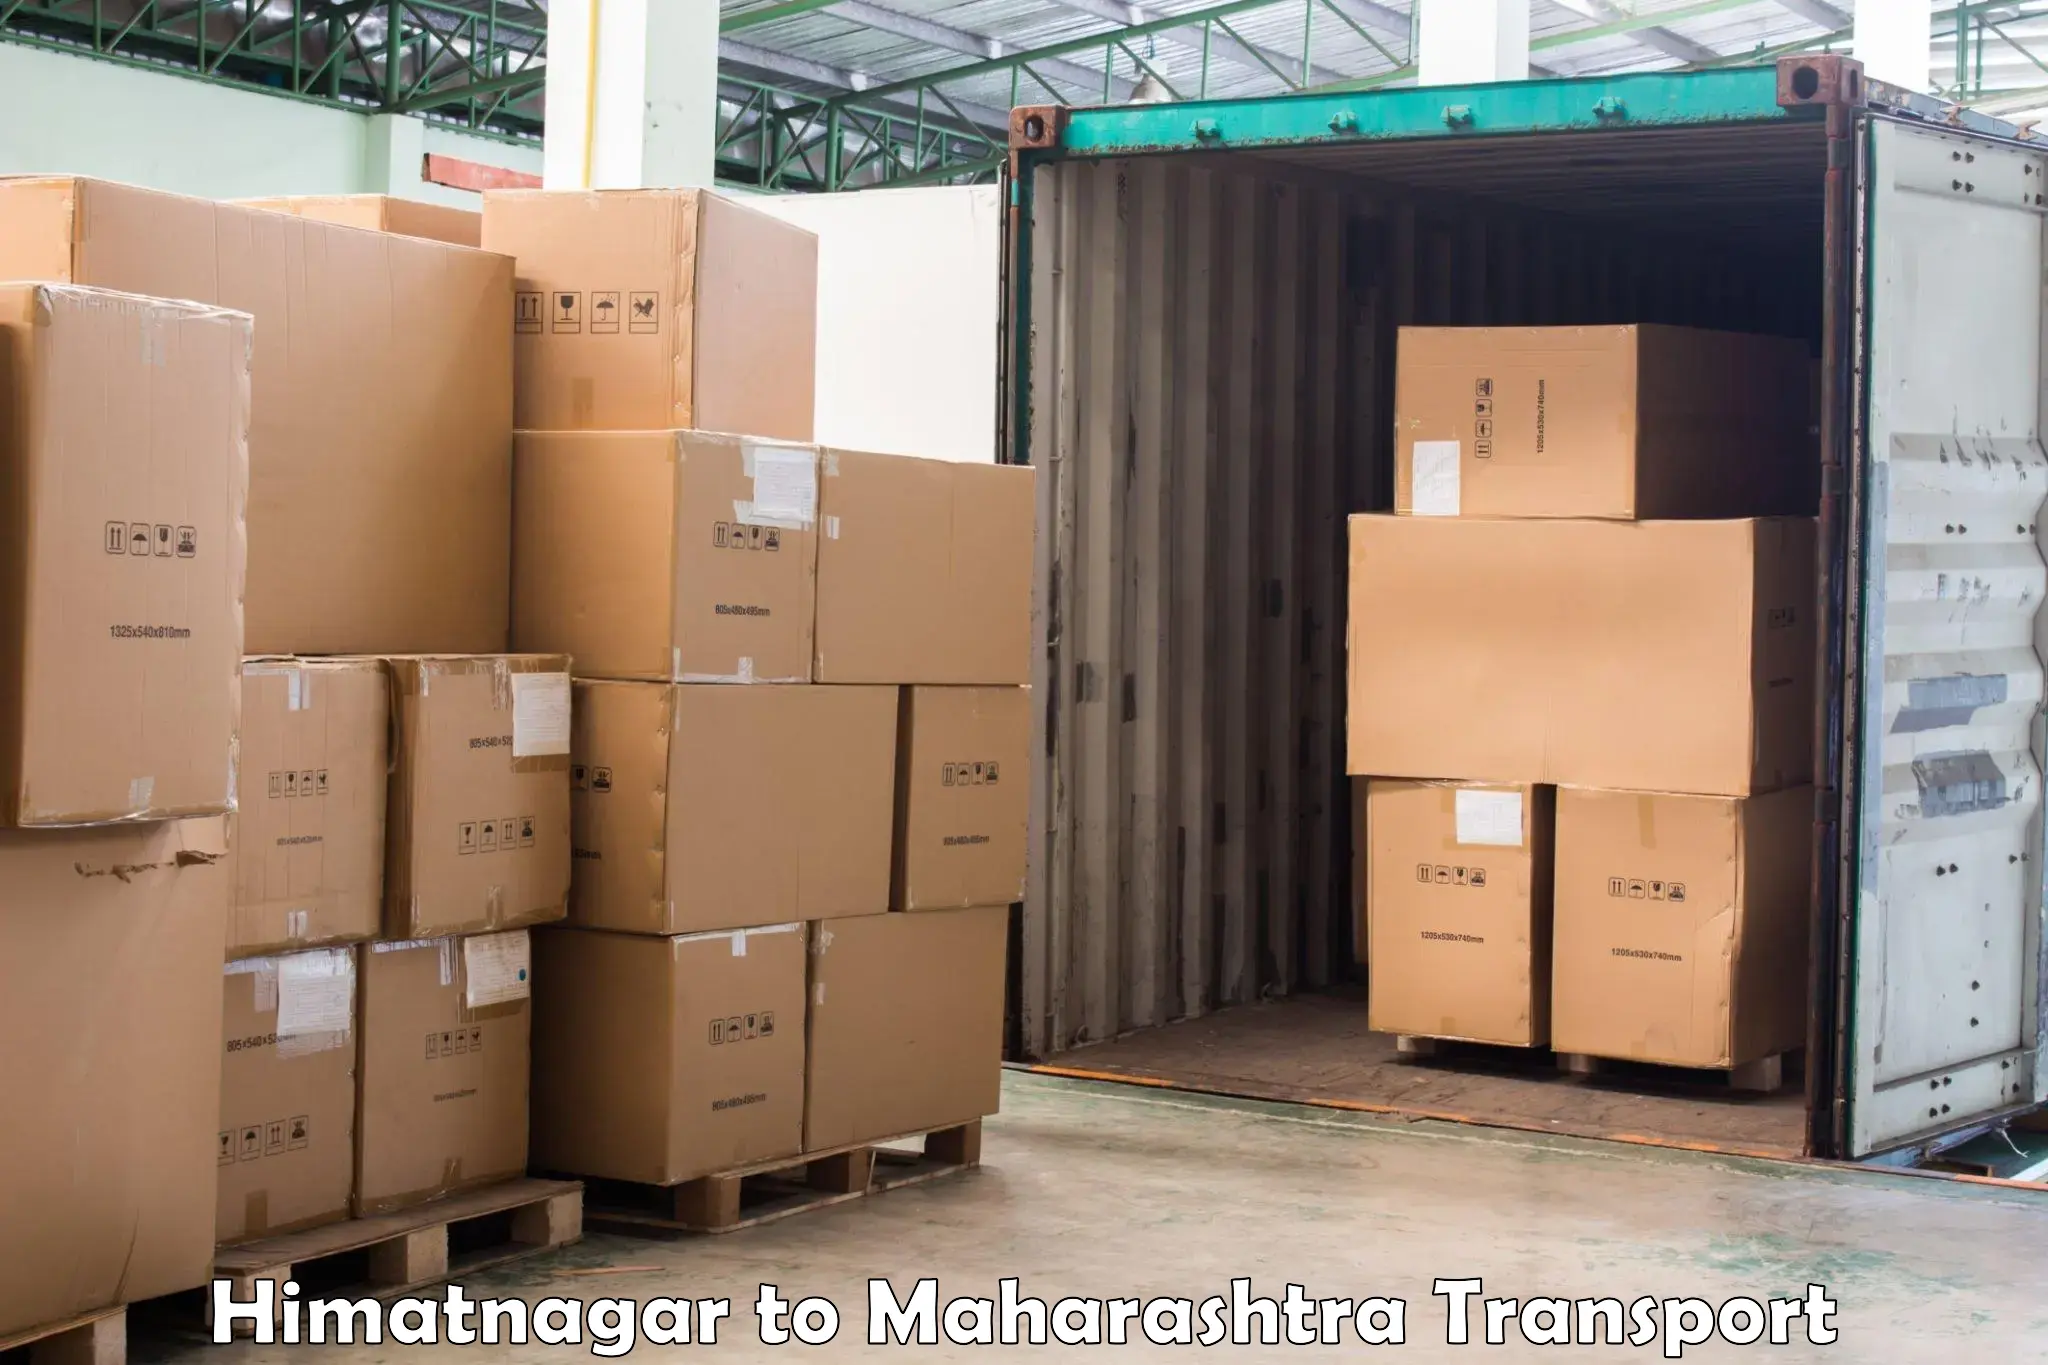 Bike shipping service Himatnagar to Lonar